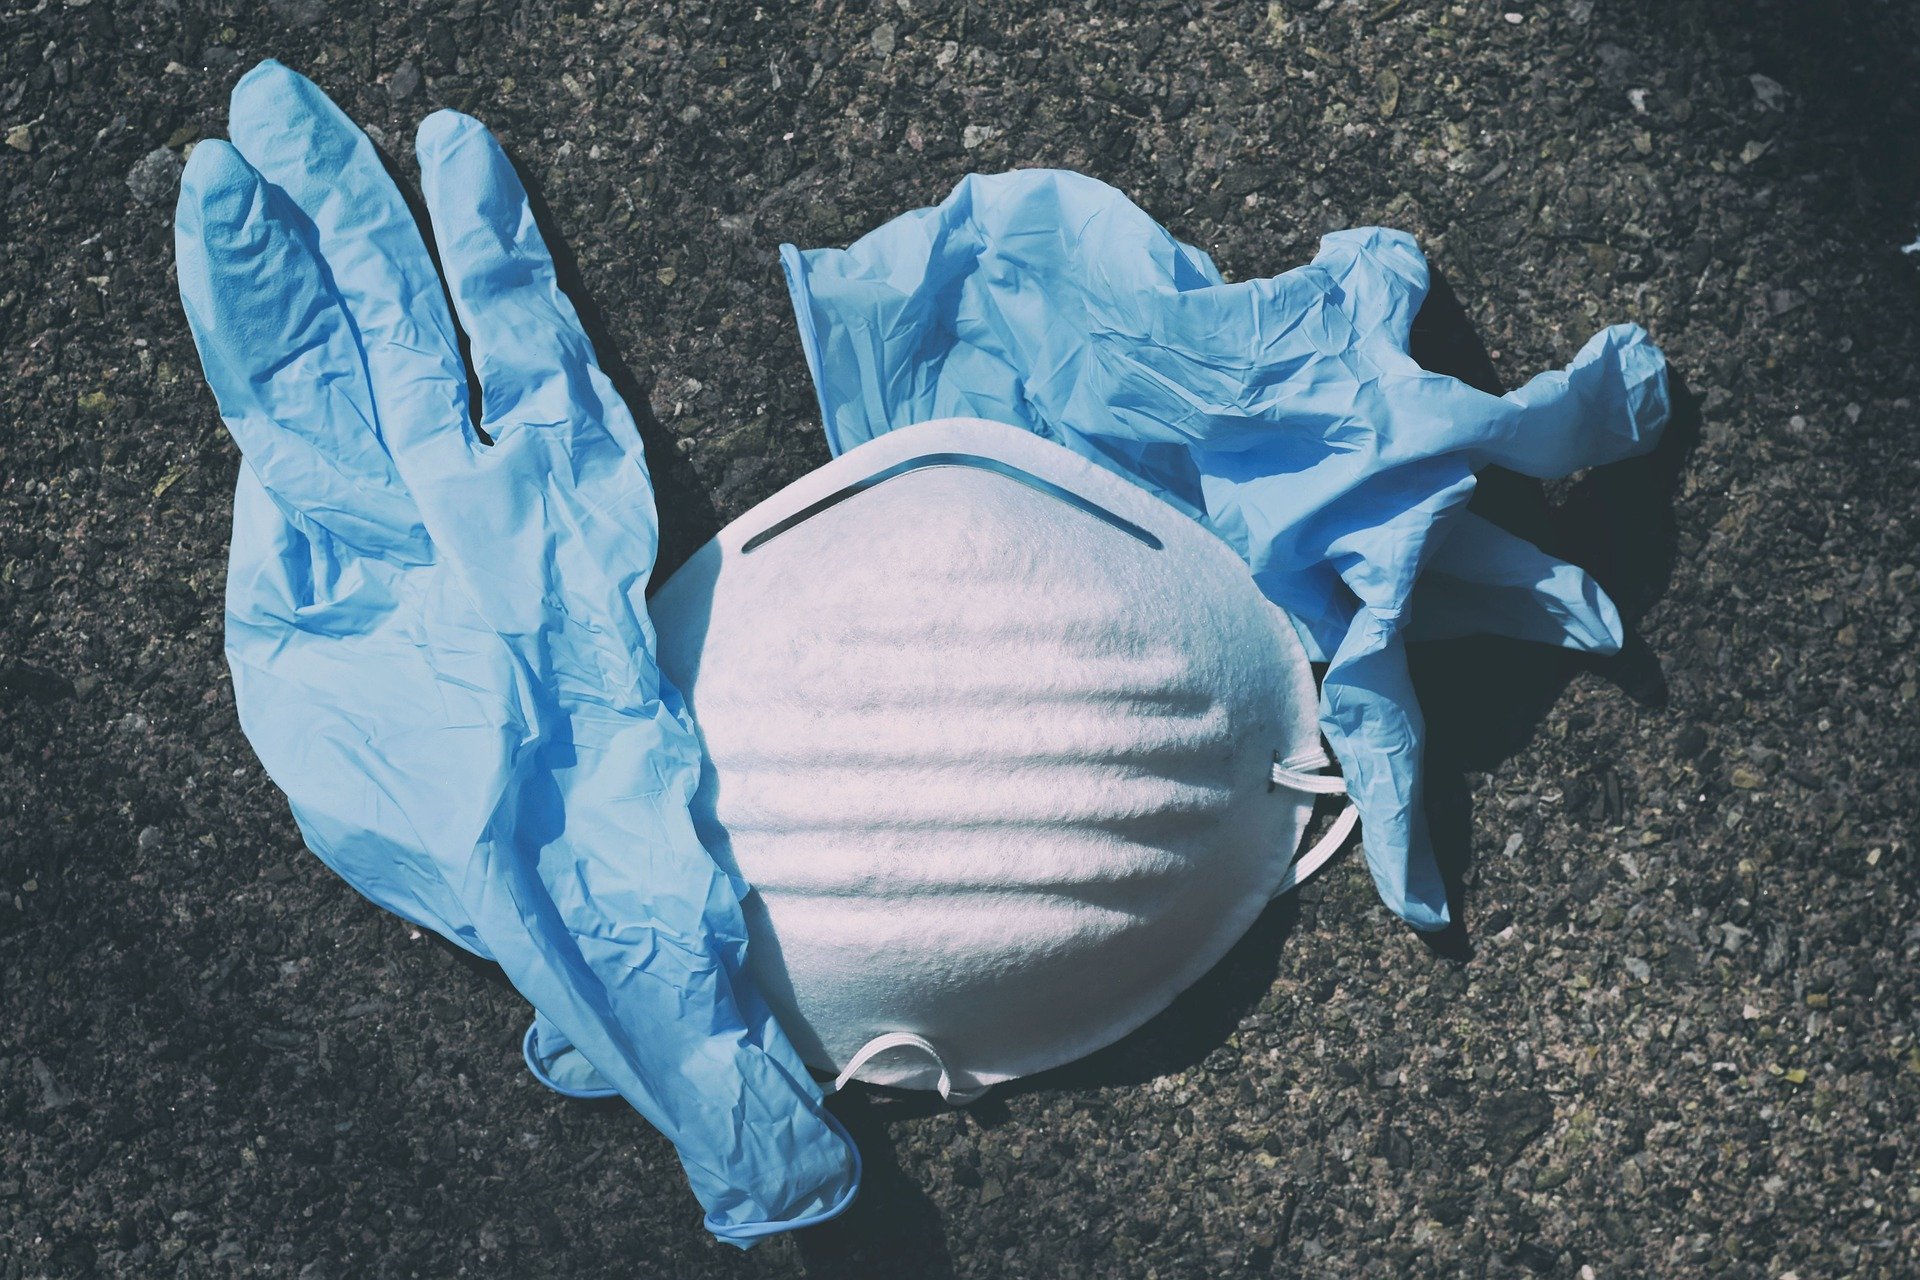 Masques, gants… la crise sanitaire pourrait aggraver la pollution plastique